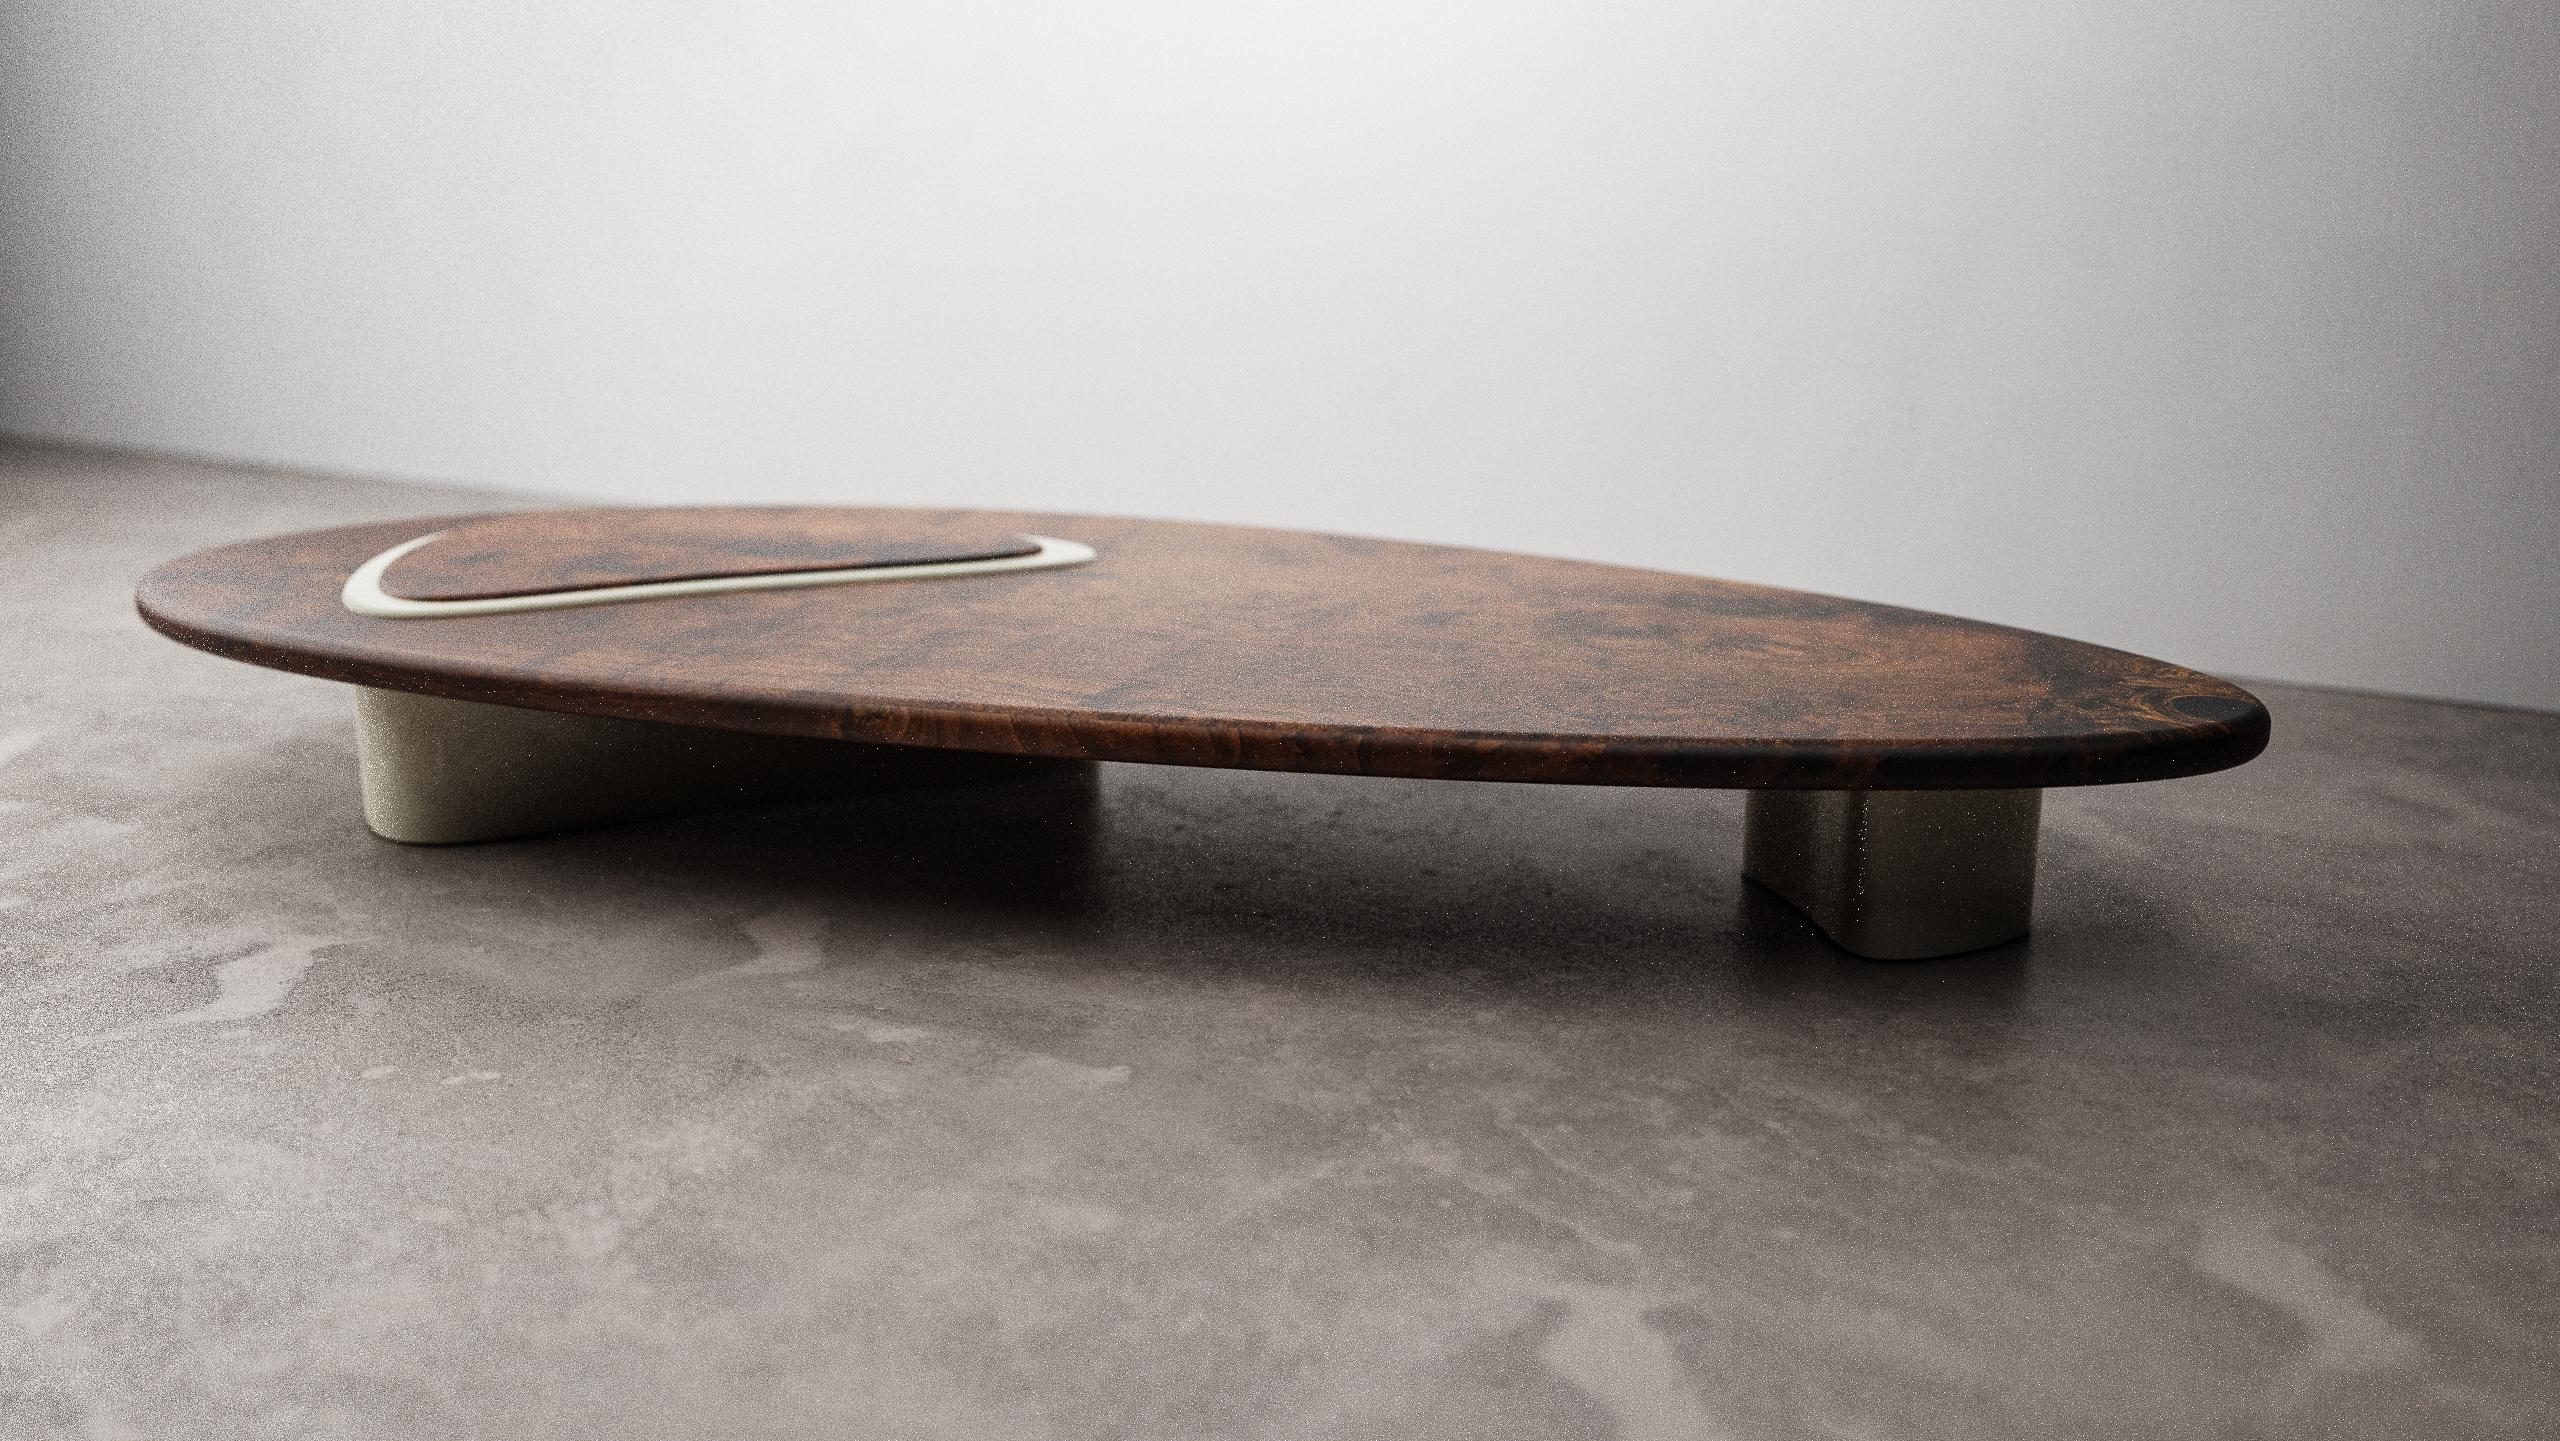 La table basse Tehama de Christophe Mark est une pièce unique fabriquée à la main. Le plateau de la table est une plaque de noyer Claro massif dont la forme organique imite celle de la chrysomèle du noyer, le plus grand adversaire de l'arbre. Les